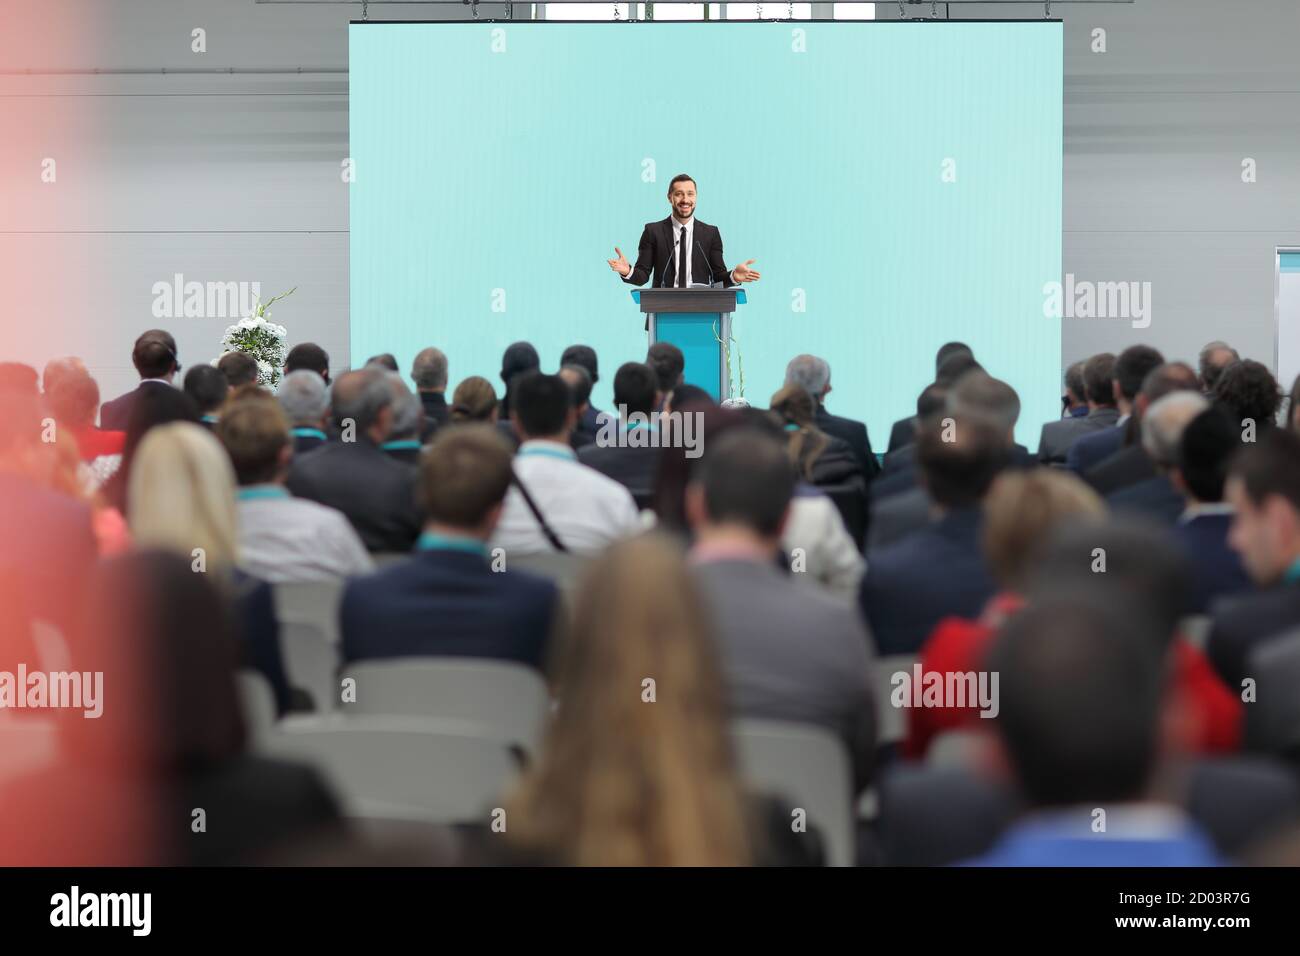 Personnes assises dans une salle de conférence et un homme à l'intérieur un costume donnant un discours Banque D'Images